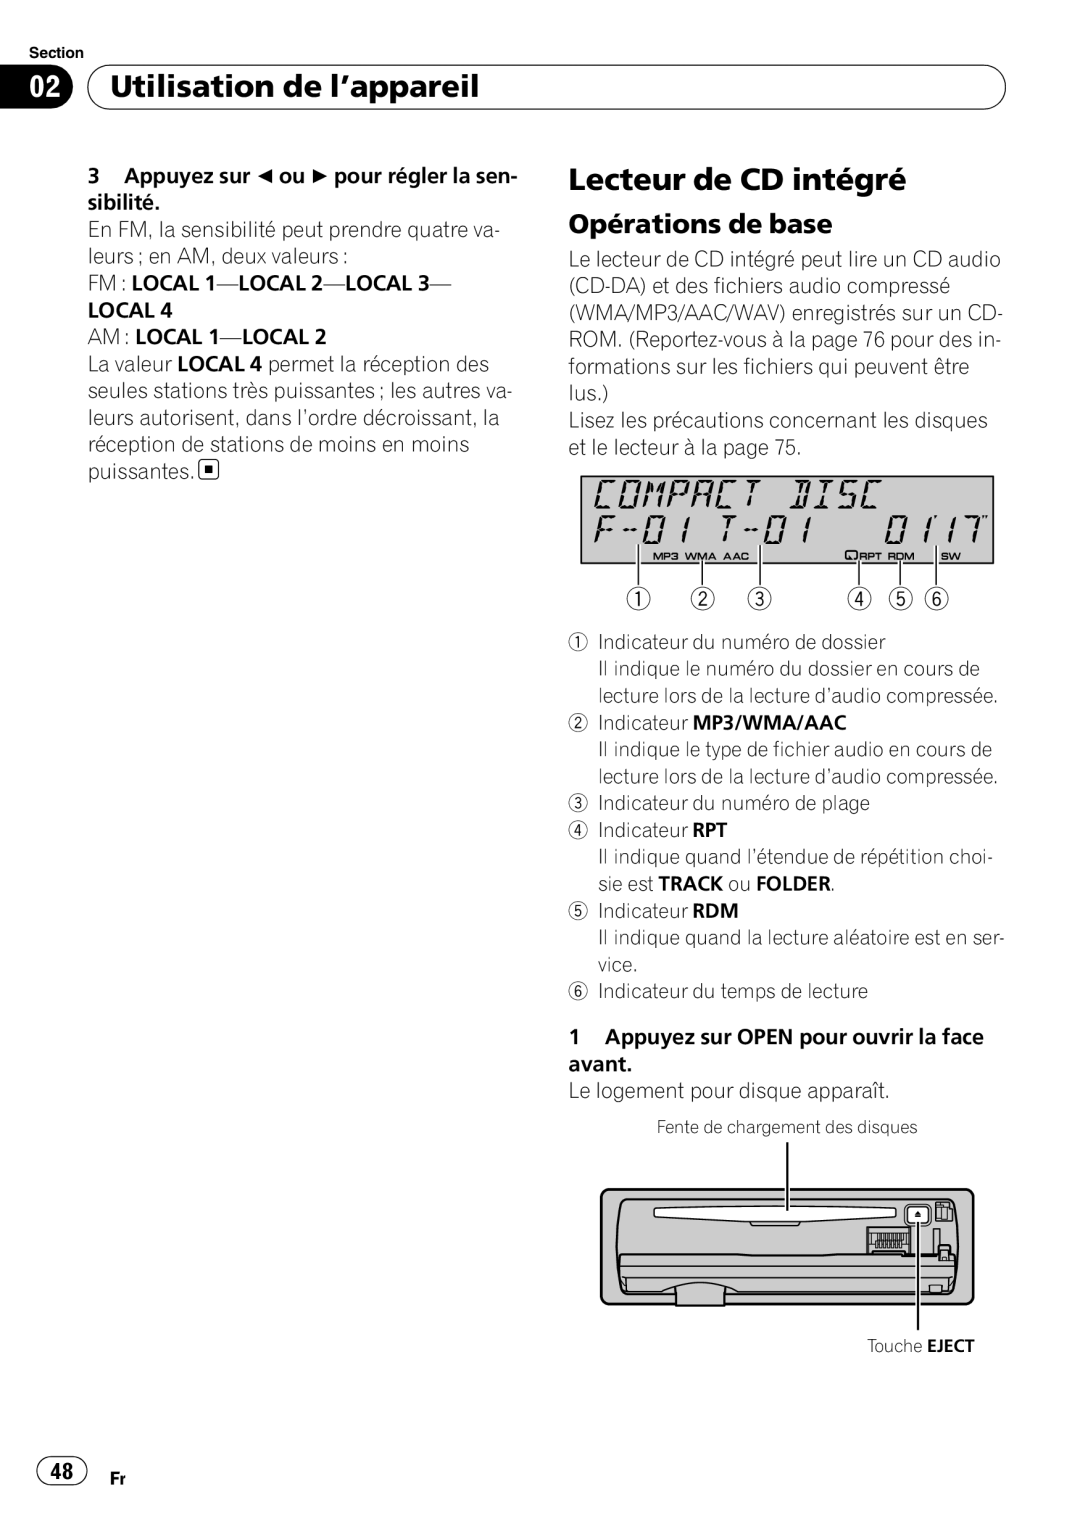 Pioneer SRC7127-B/N operation manual Lecteur de CD intégré, Utilisation de l’appareil, Opérations de base,    